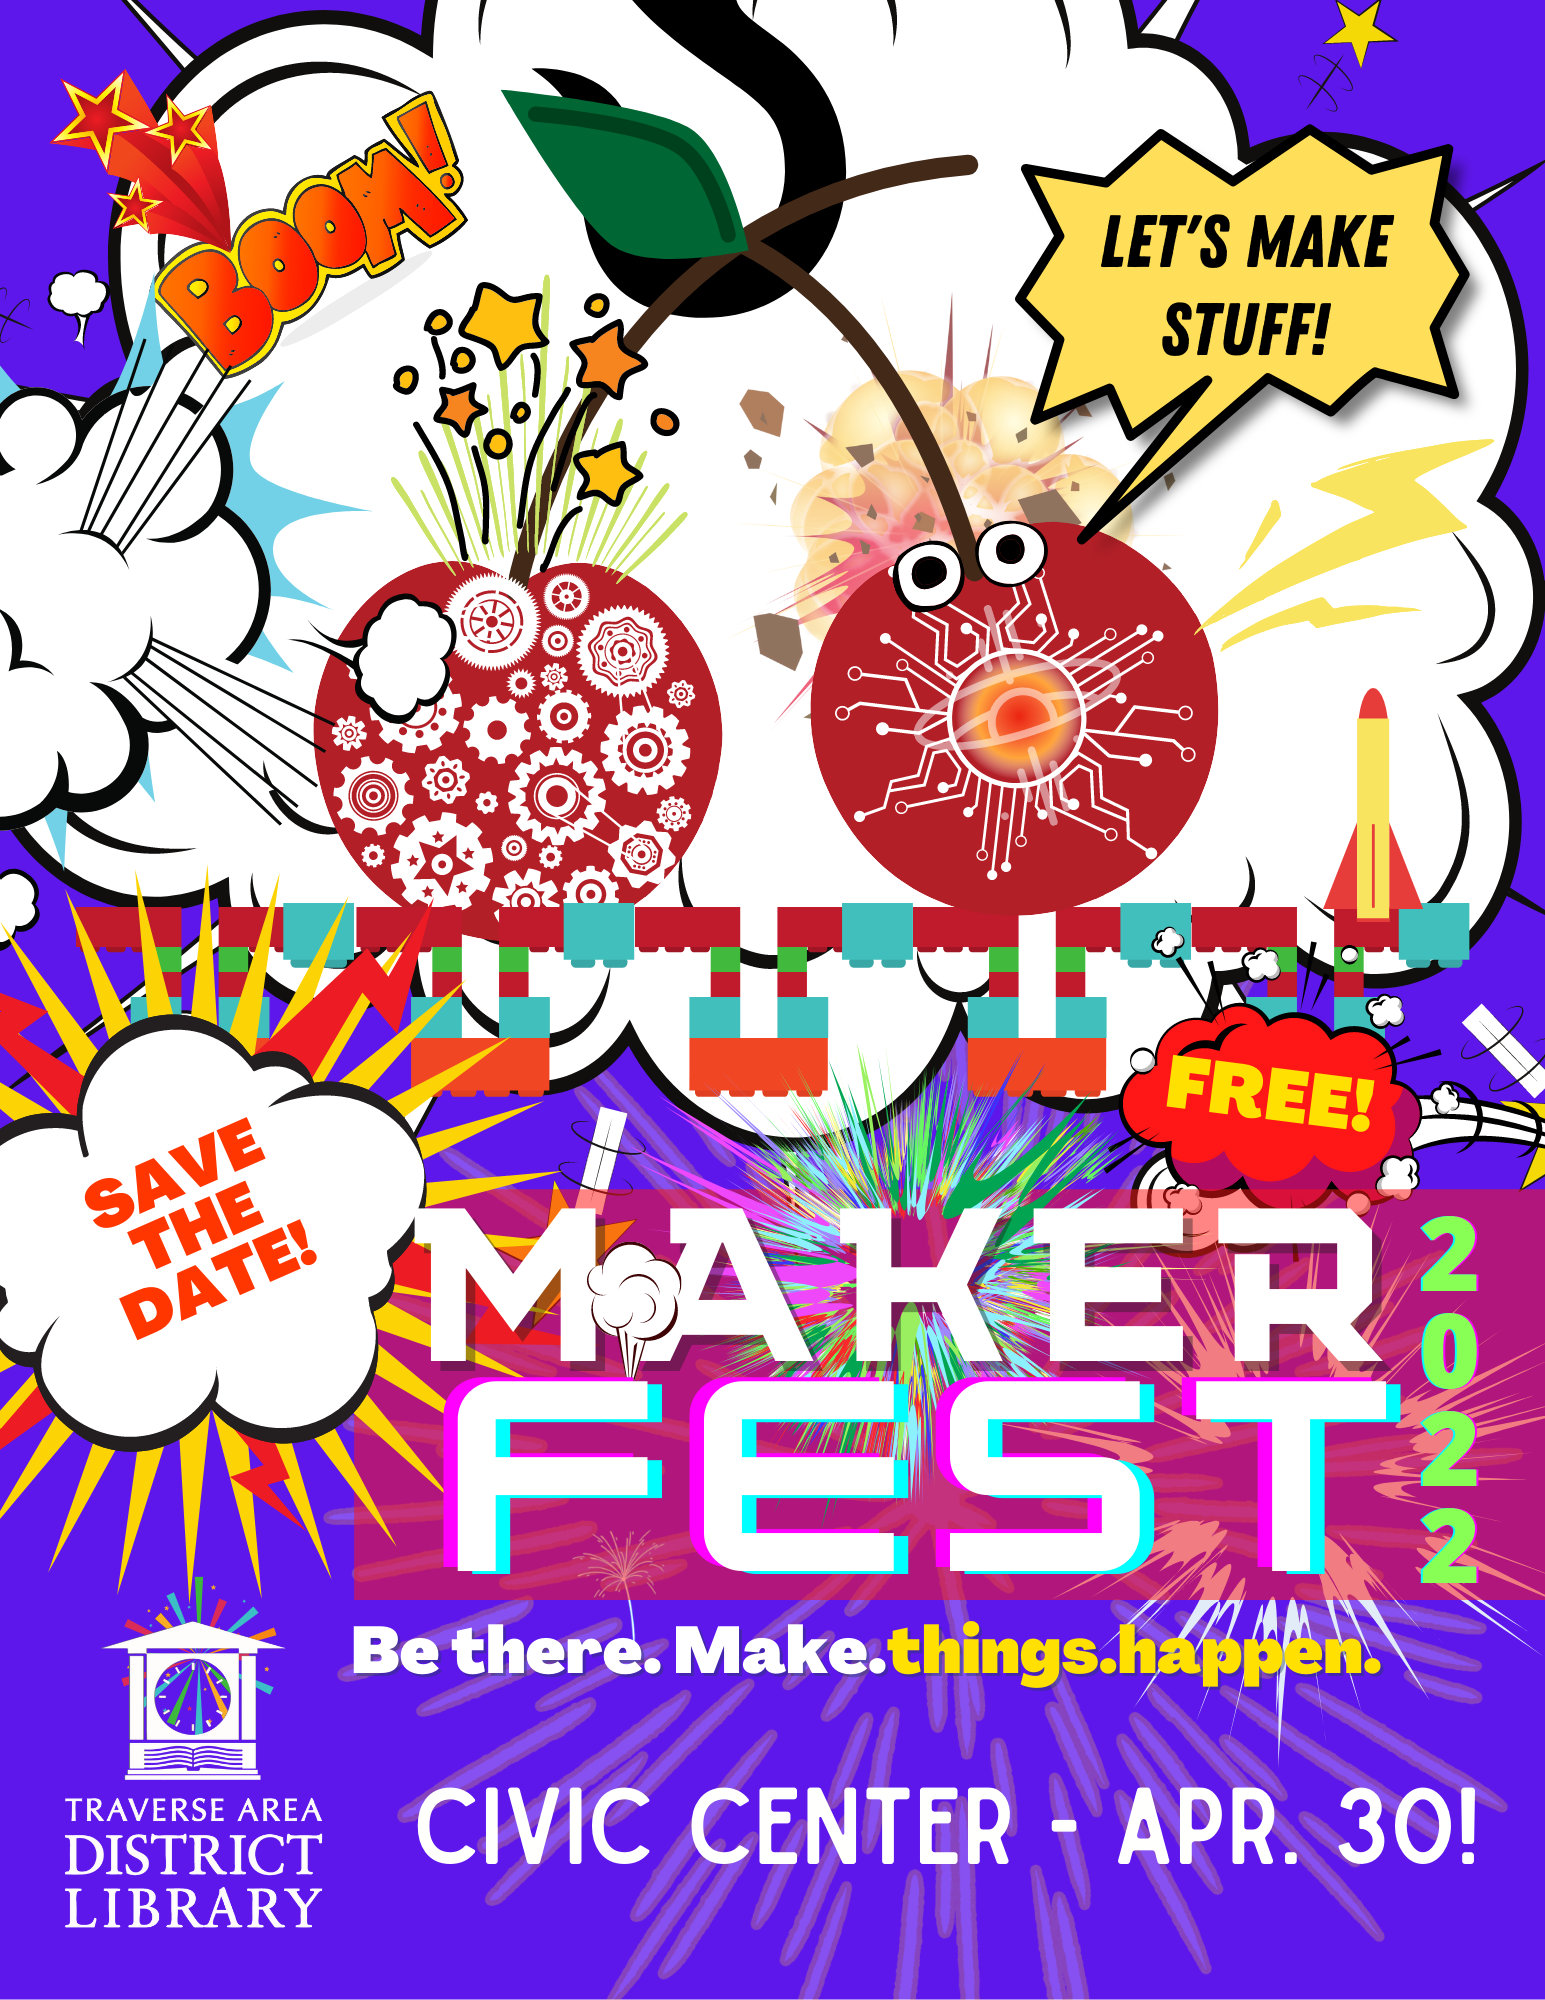 MakerFest - let's make stuff!